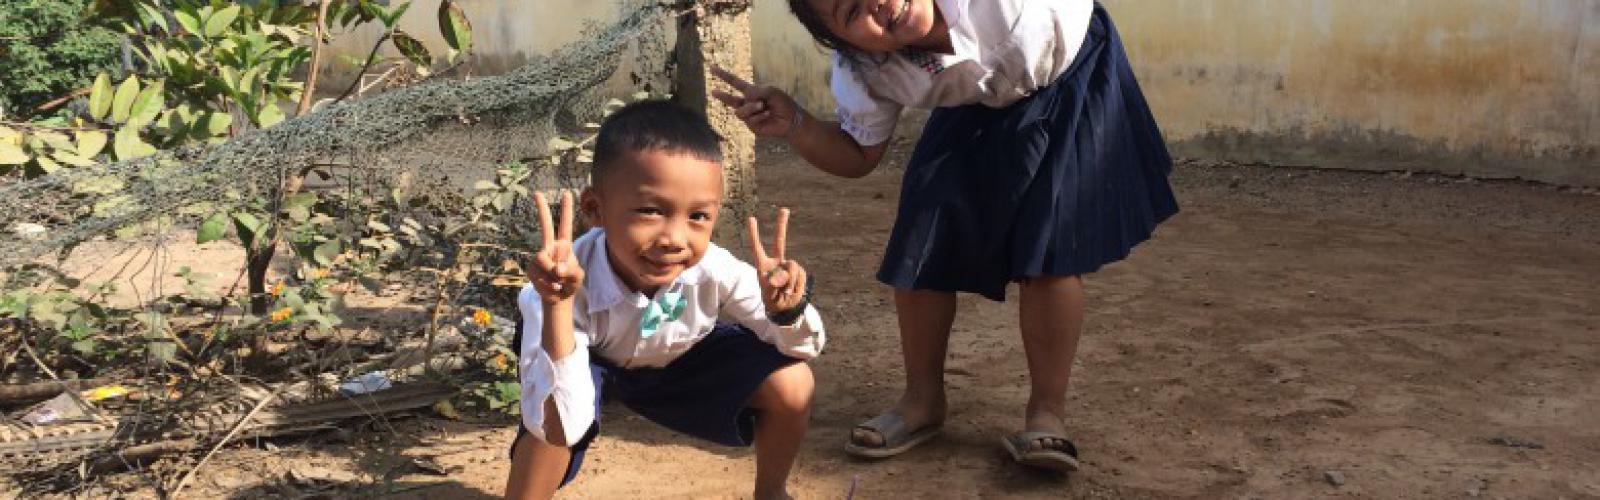 VVOB project rond gender veilige scholen in Cambodja